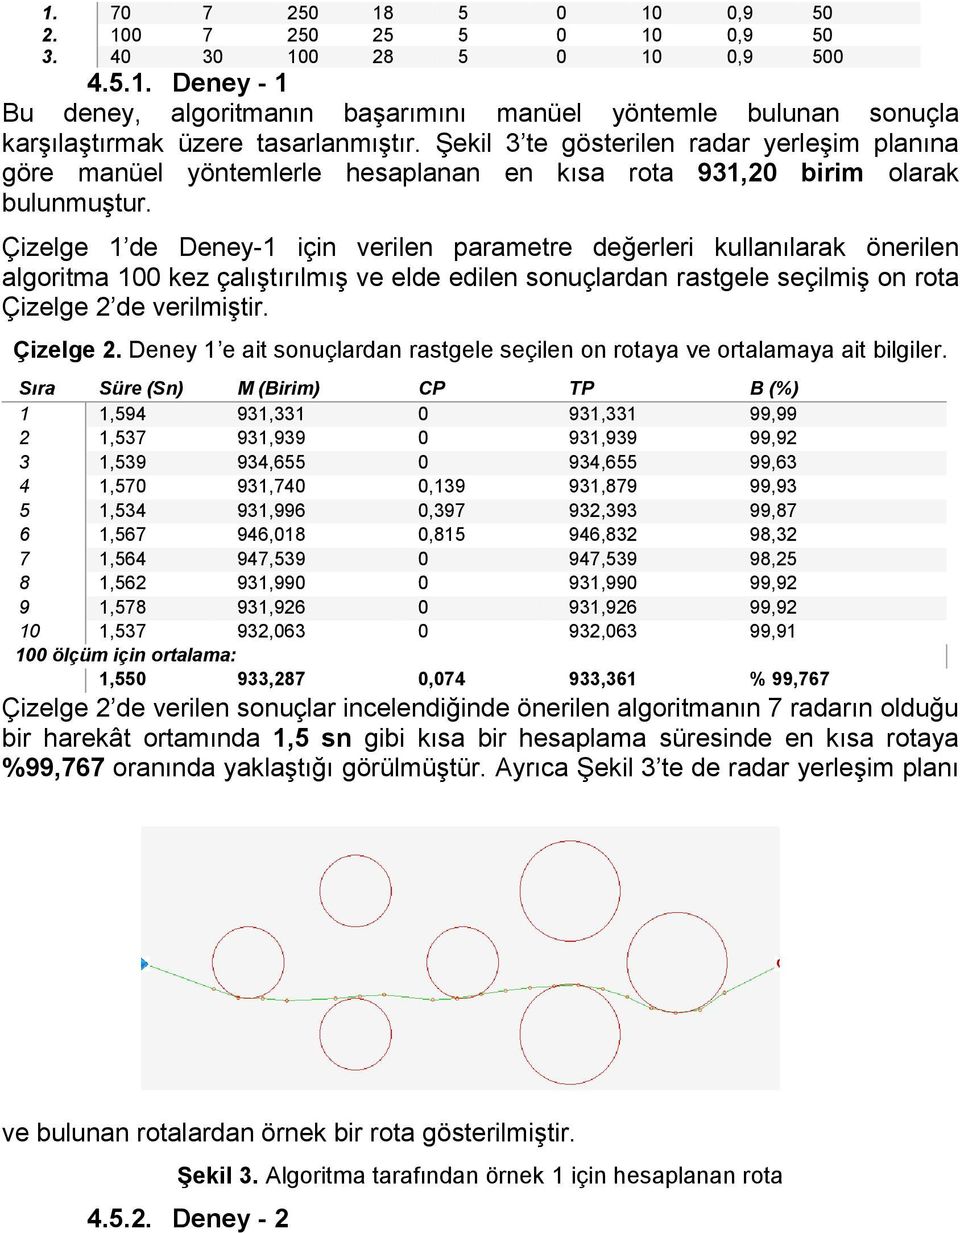 Çizelge 1 de Deney-1 için verilen parametre değerleri ullanılara önerilen algoritma 100 ez çalıştırılmış ve elde edilen sonuçlardan rastgele seçilmiş on rota Çizelge 2 